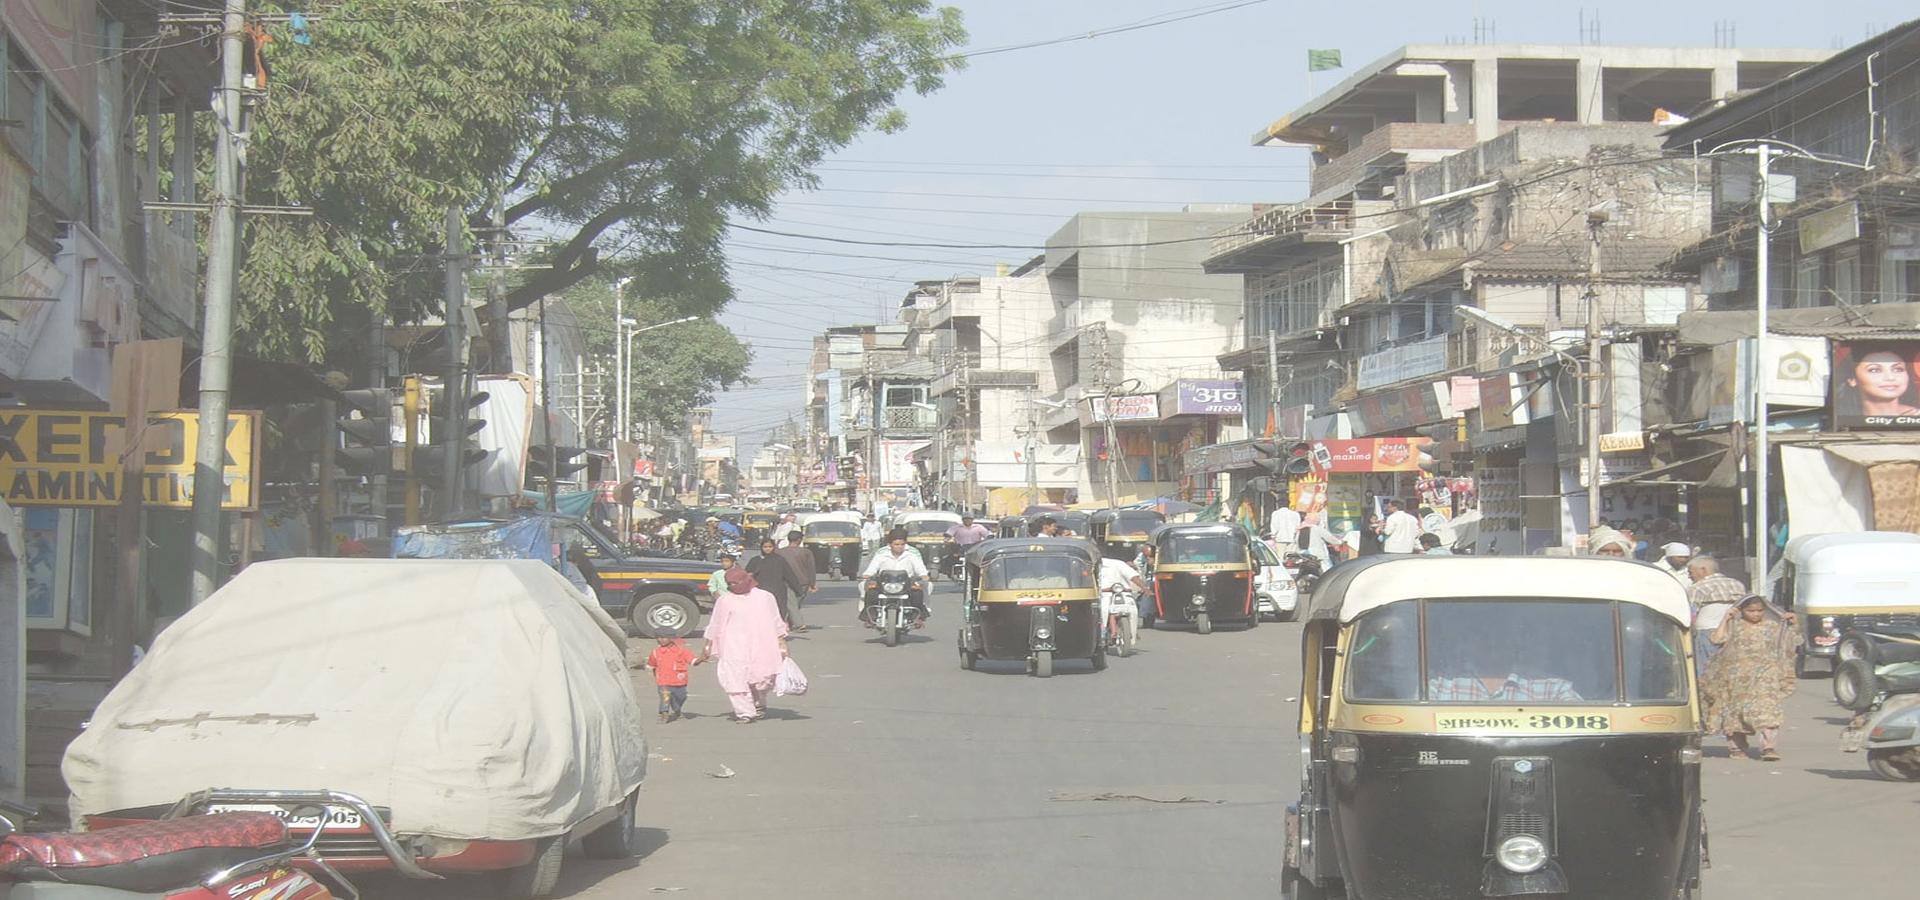 <b>Aurangabad, Maharashtra, India</b>